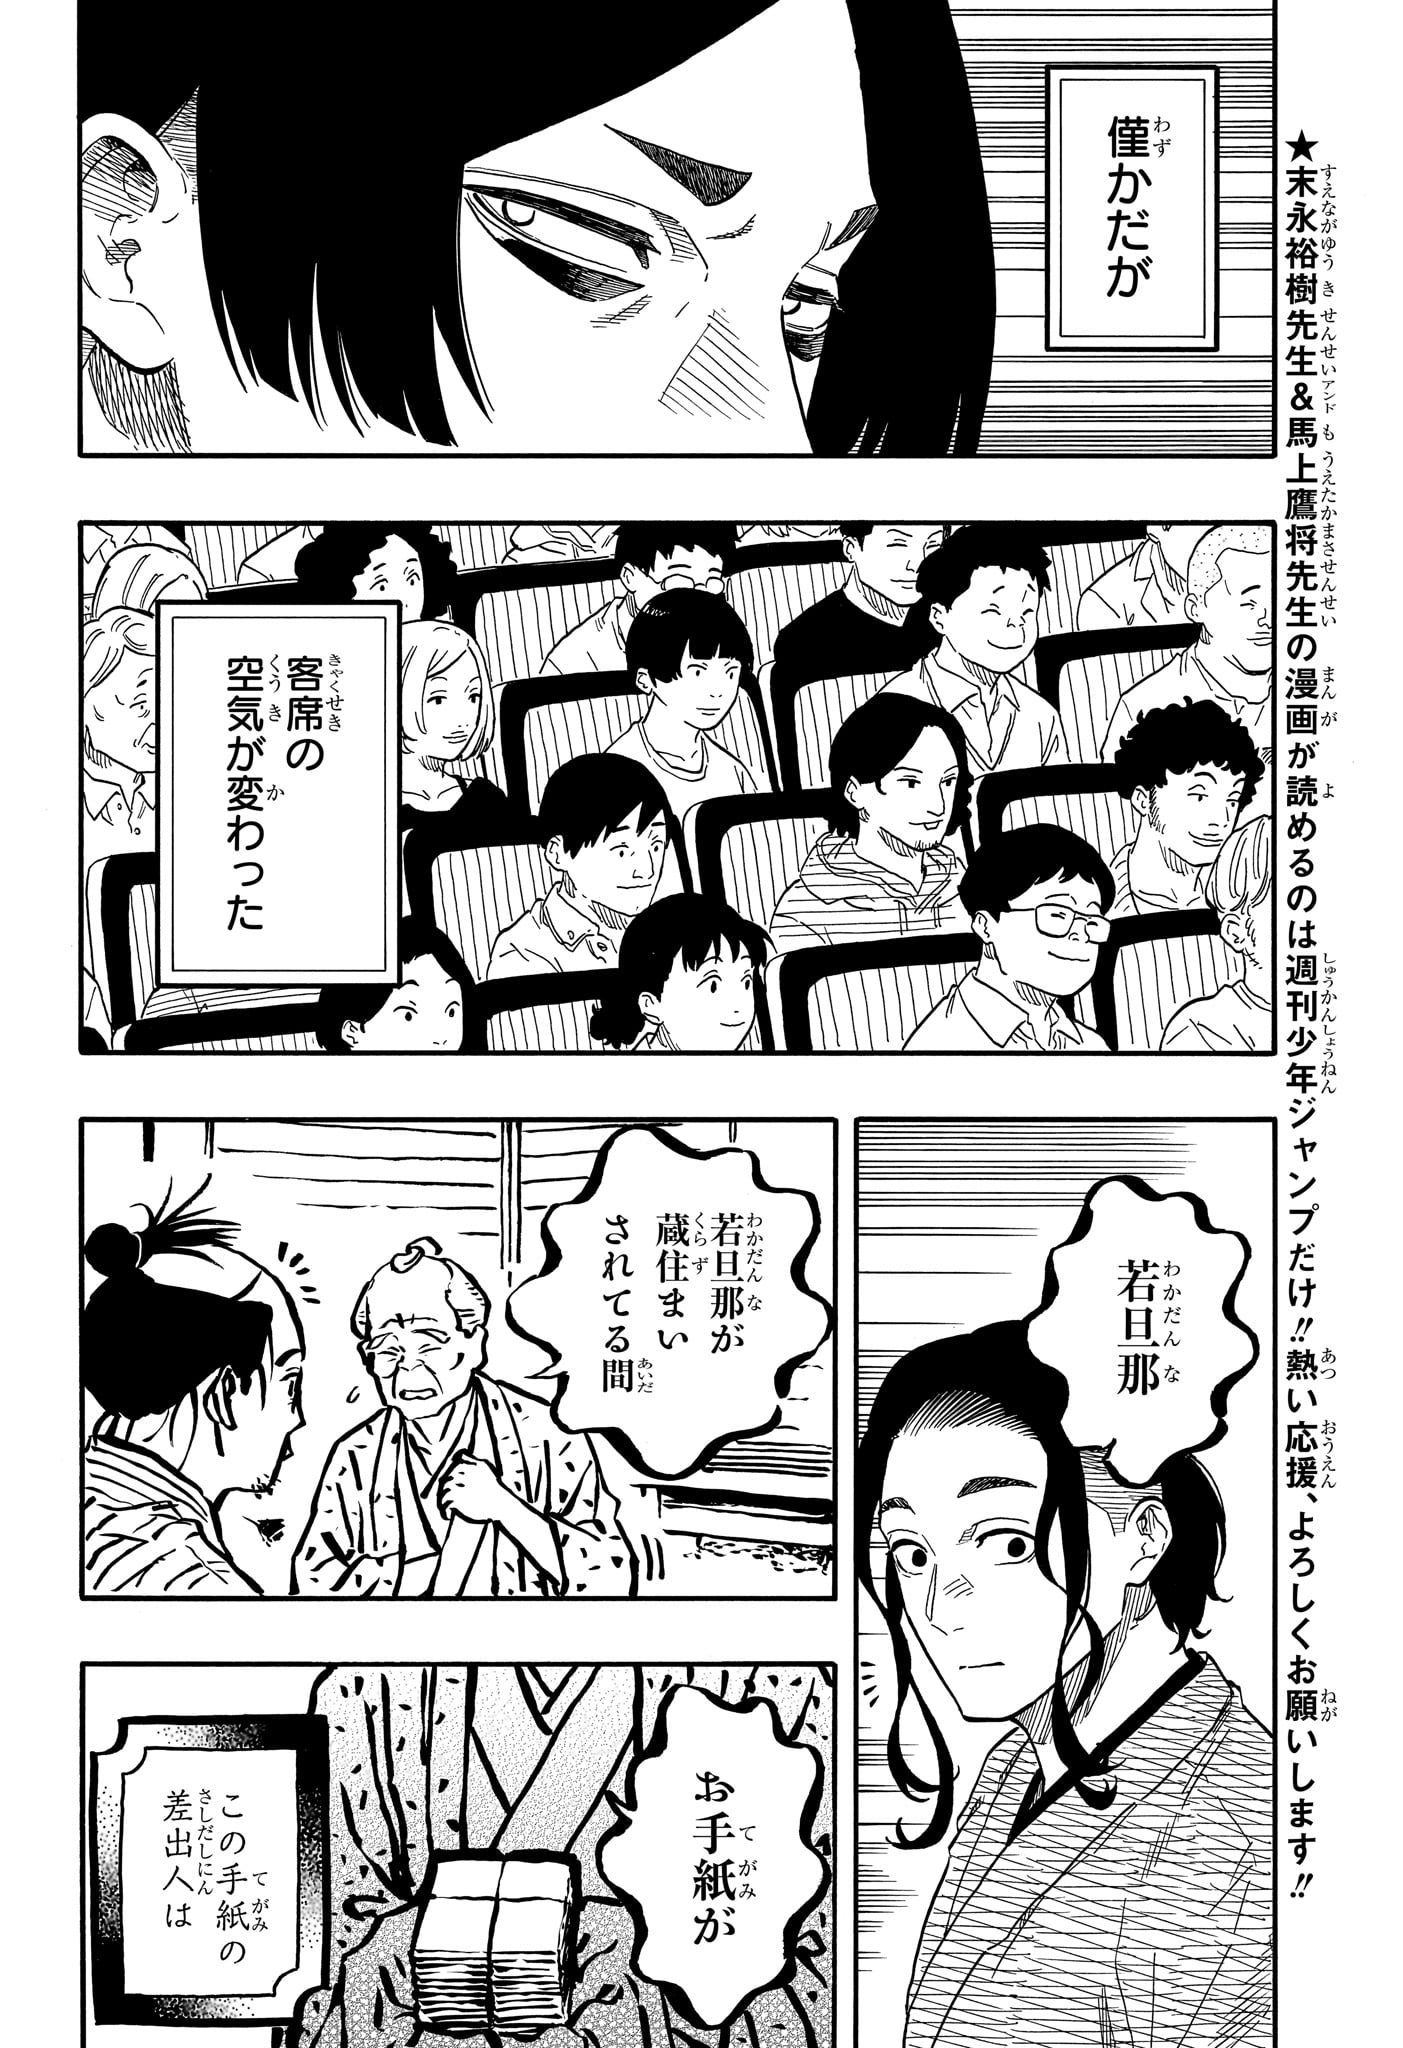 Akane-Banashi - Chapter 114 - Page 4